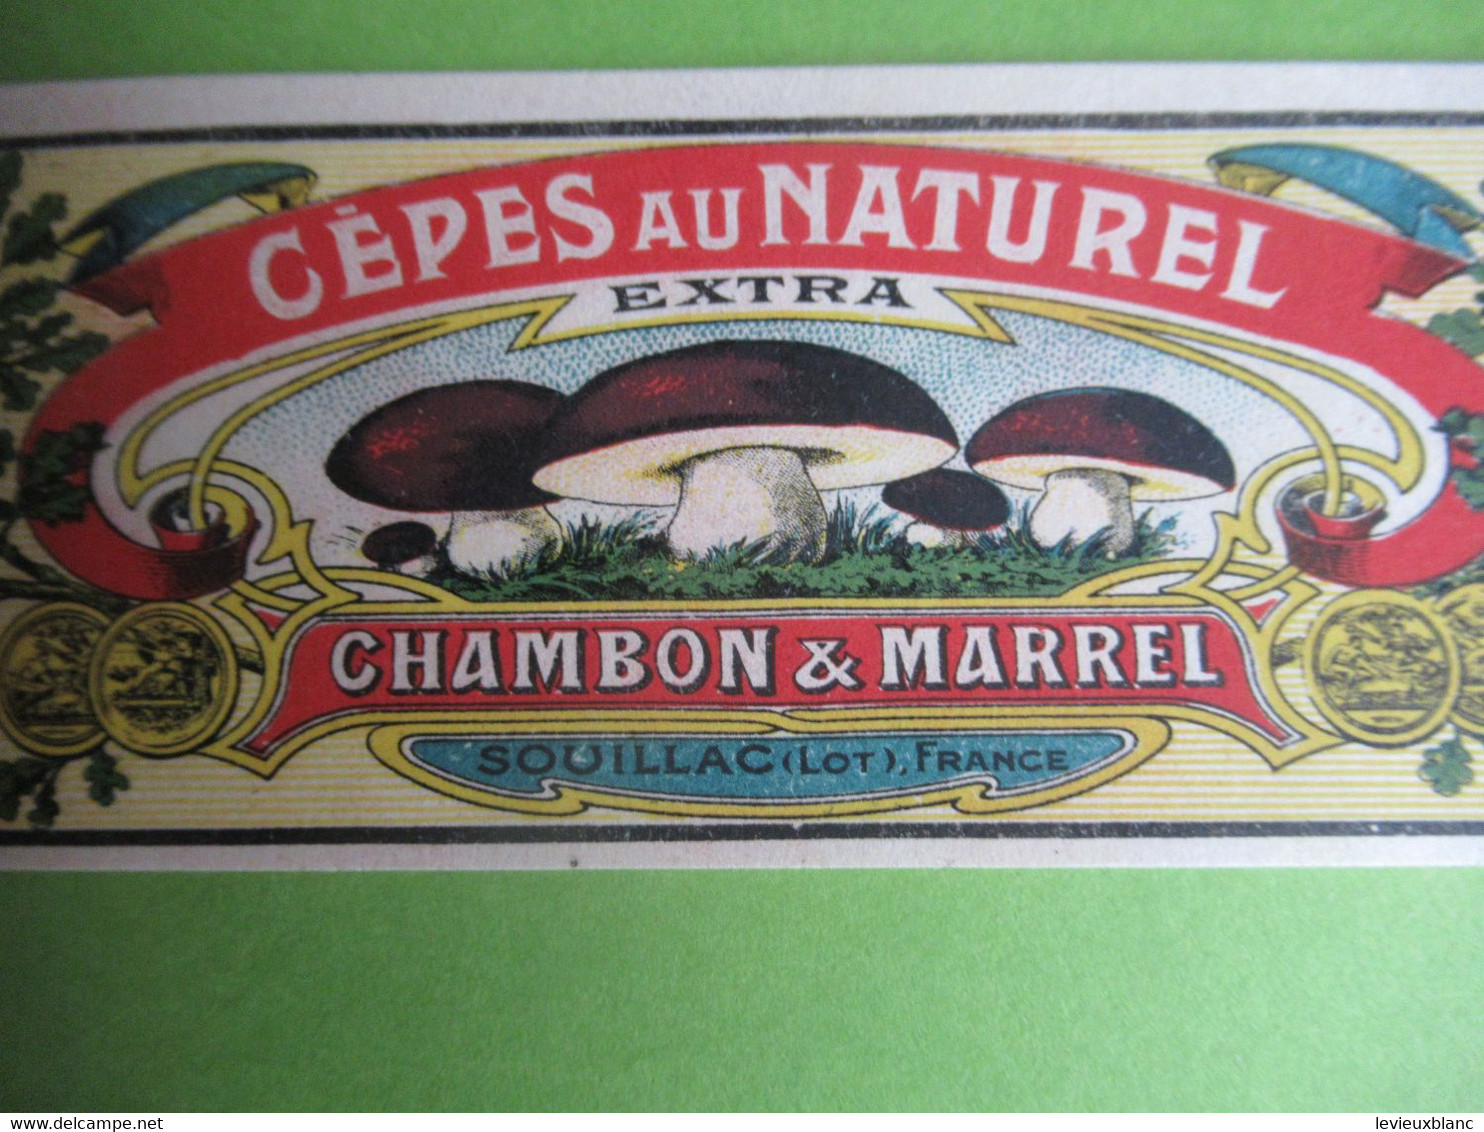 Etiquette Conserve/Cèpes Au Naturel /CHAMBON & MARREL/SOUILLAC( Lot ) Production JII/Ronteix Périgueux Début XX  ETIQ186 - Fruits & Vegetables